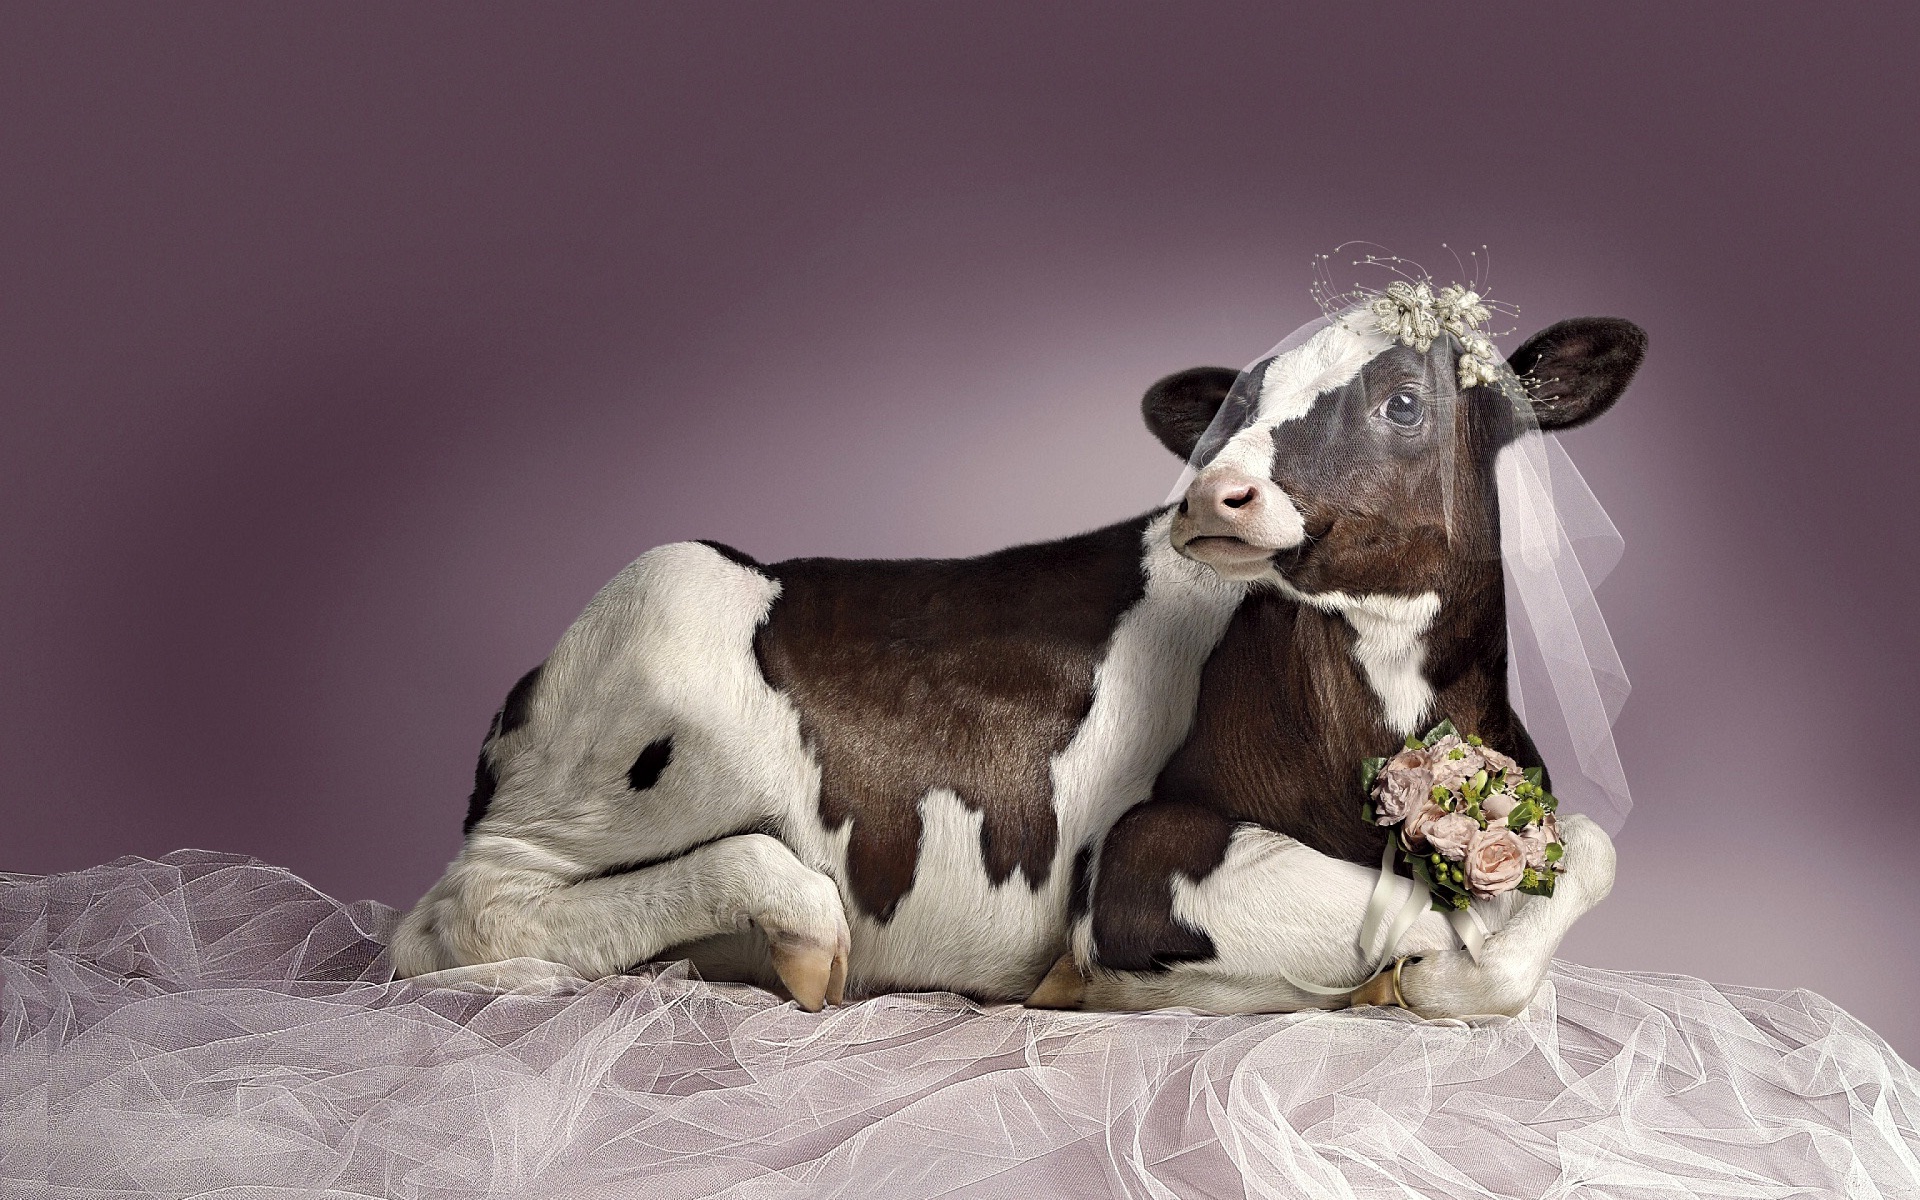 [71+] Cute Cow Wallpaper | Wallpapersafari.com